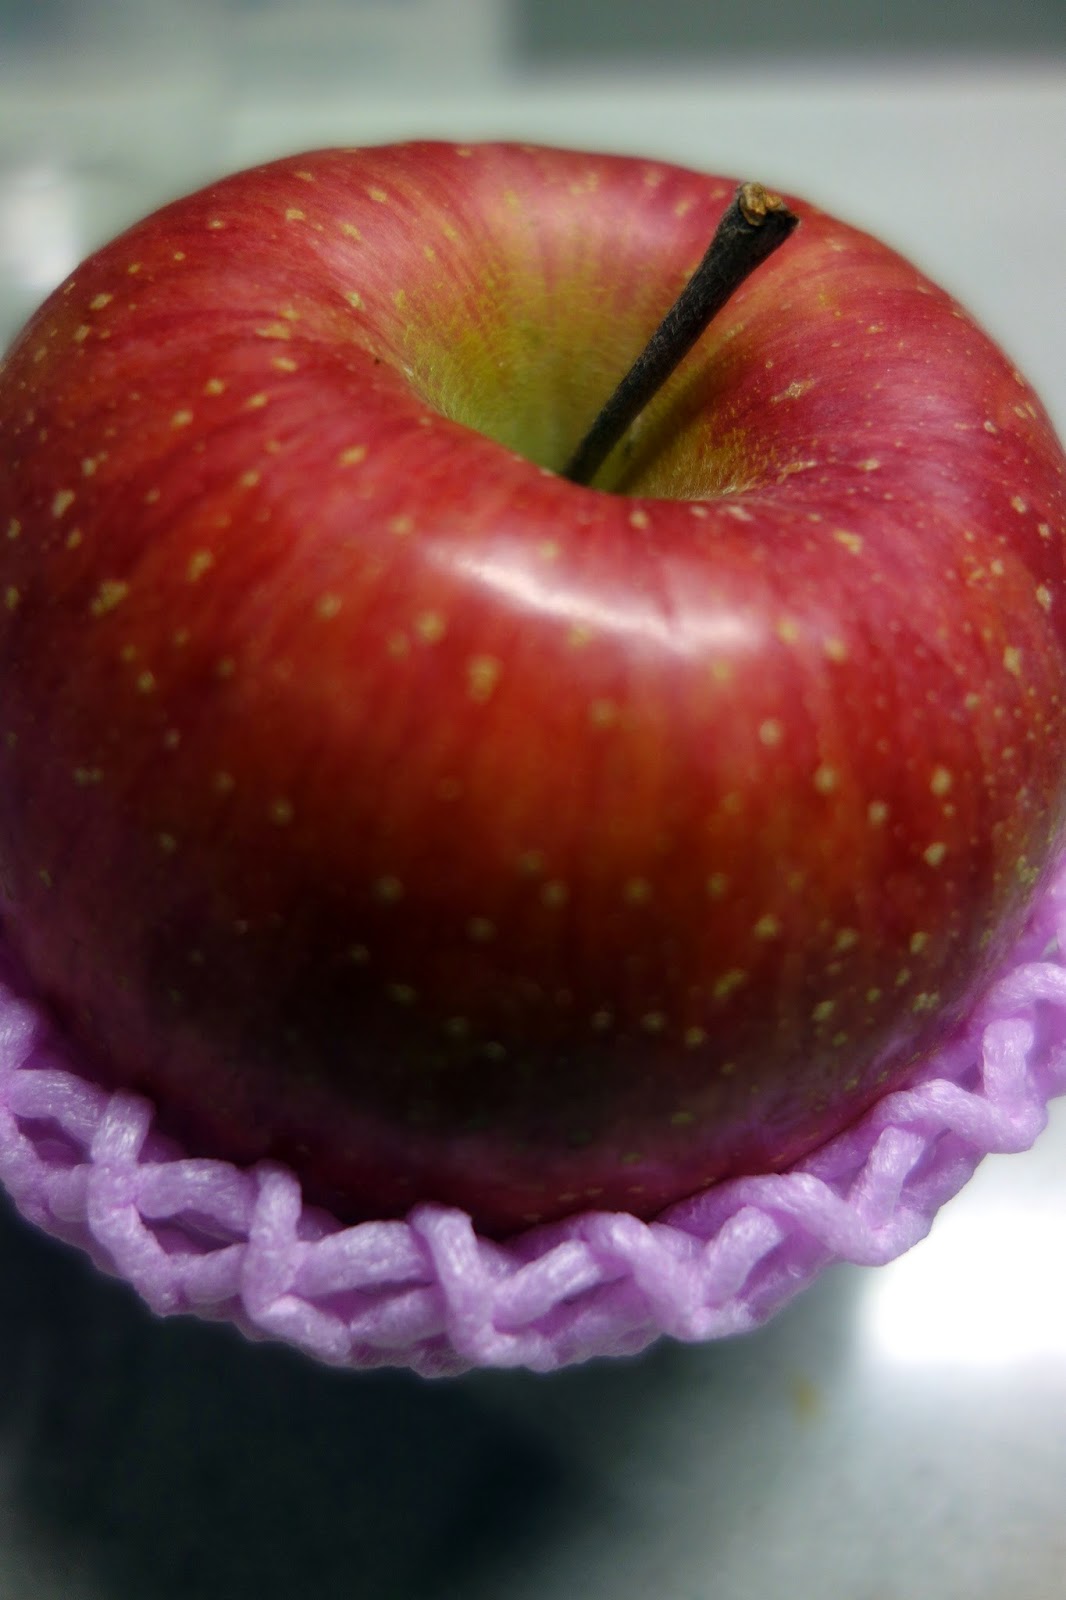 むつみごはん: 【ちょっと食べてみたい】弱虫ペダルファンに贈りたい「福ちゃんりんご」を食べてみた